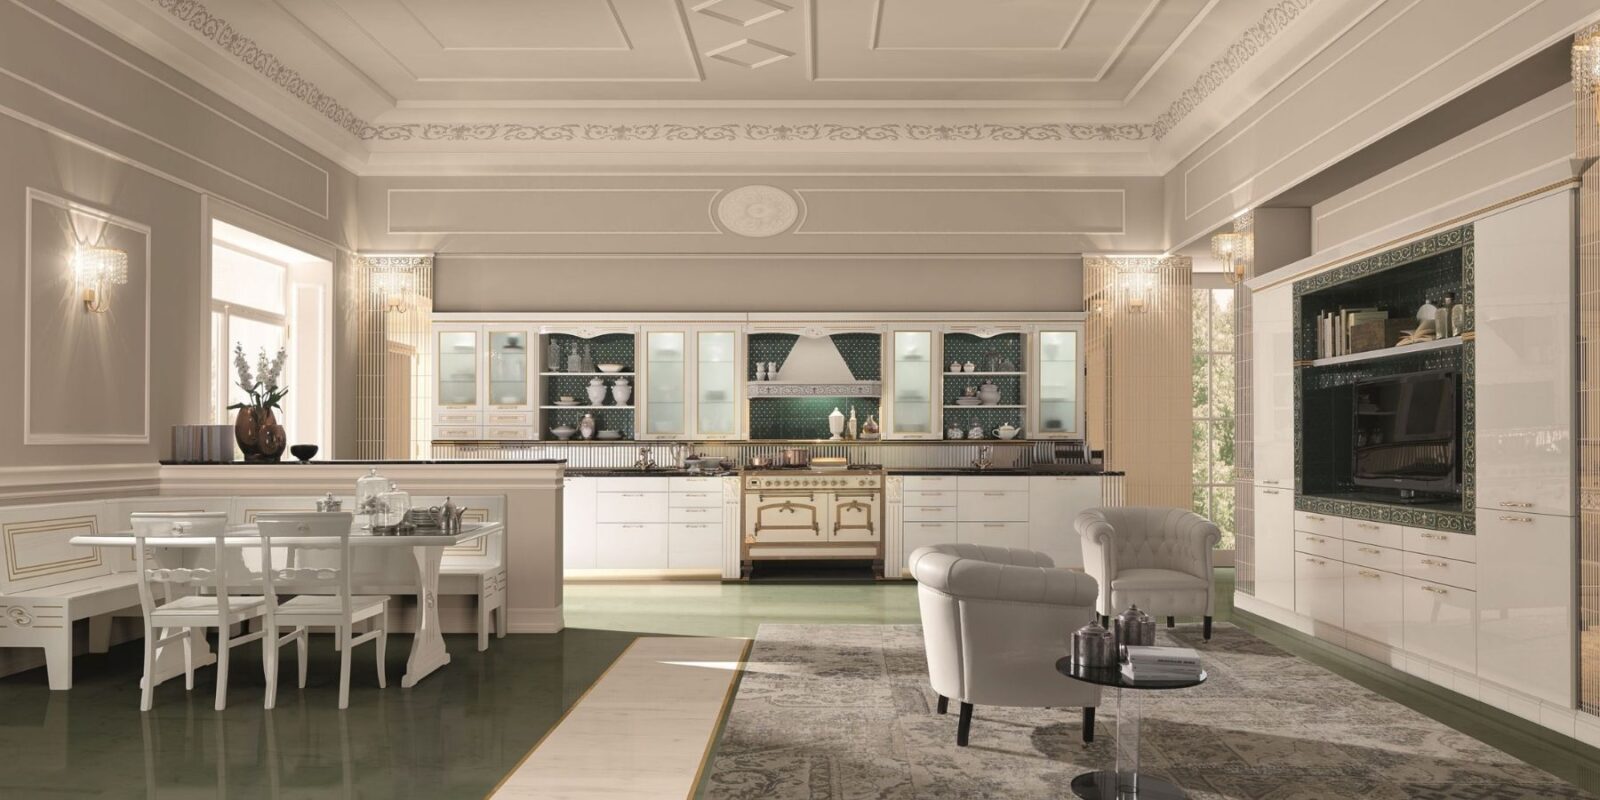 Versione bianco siberiano di Tiffany, la nuova cucina firmata Rastelli